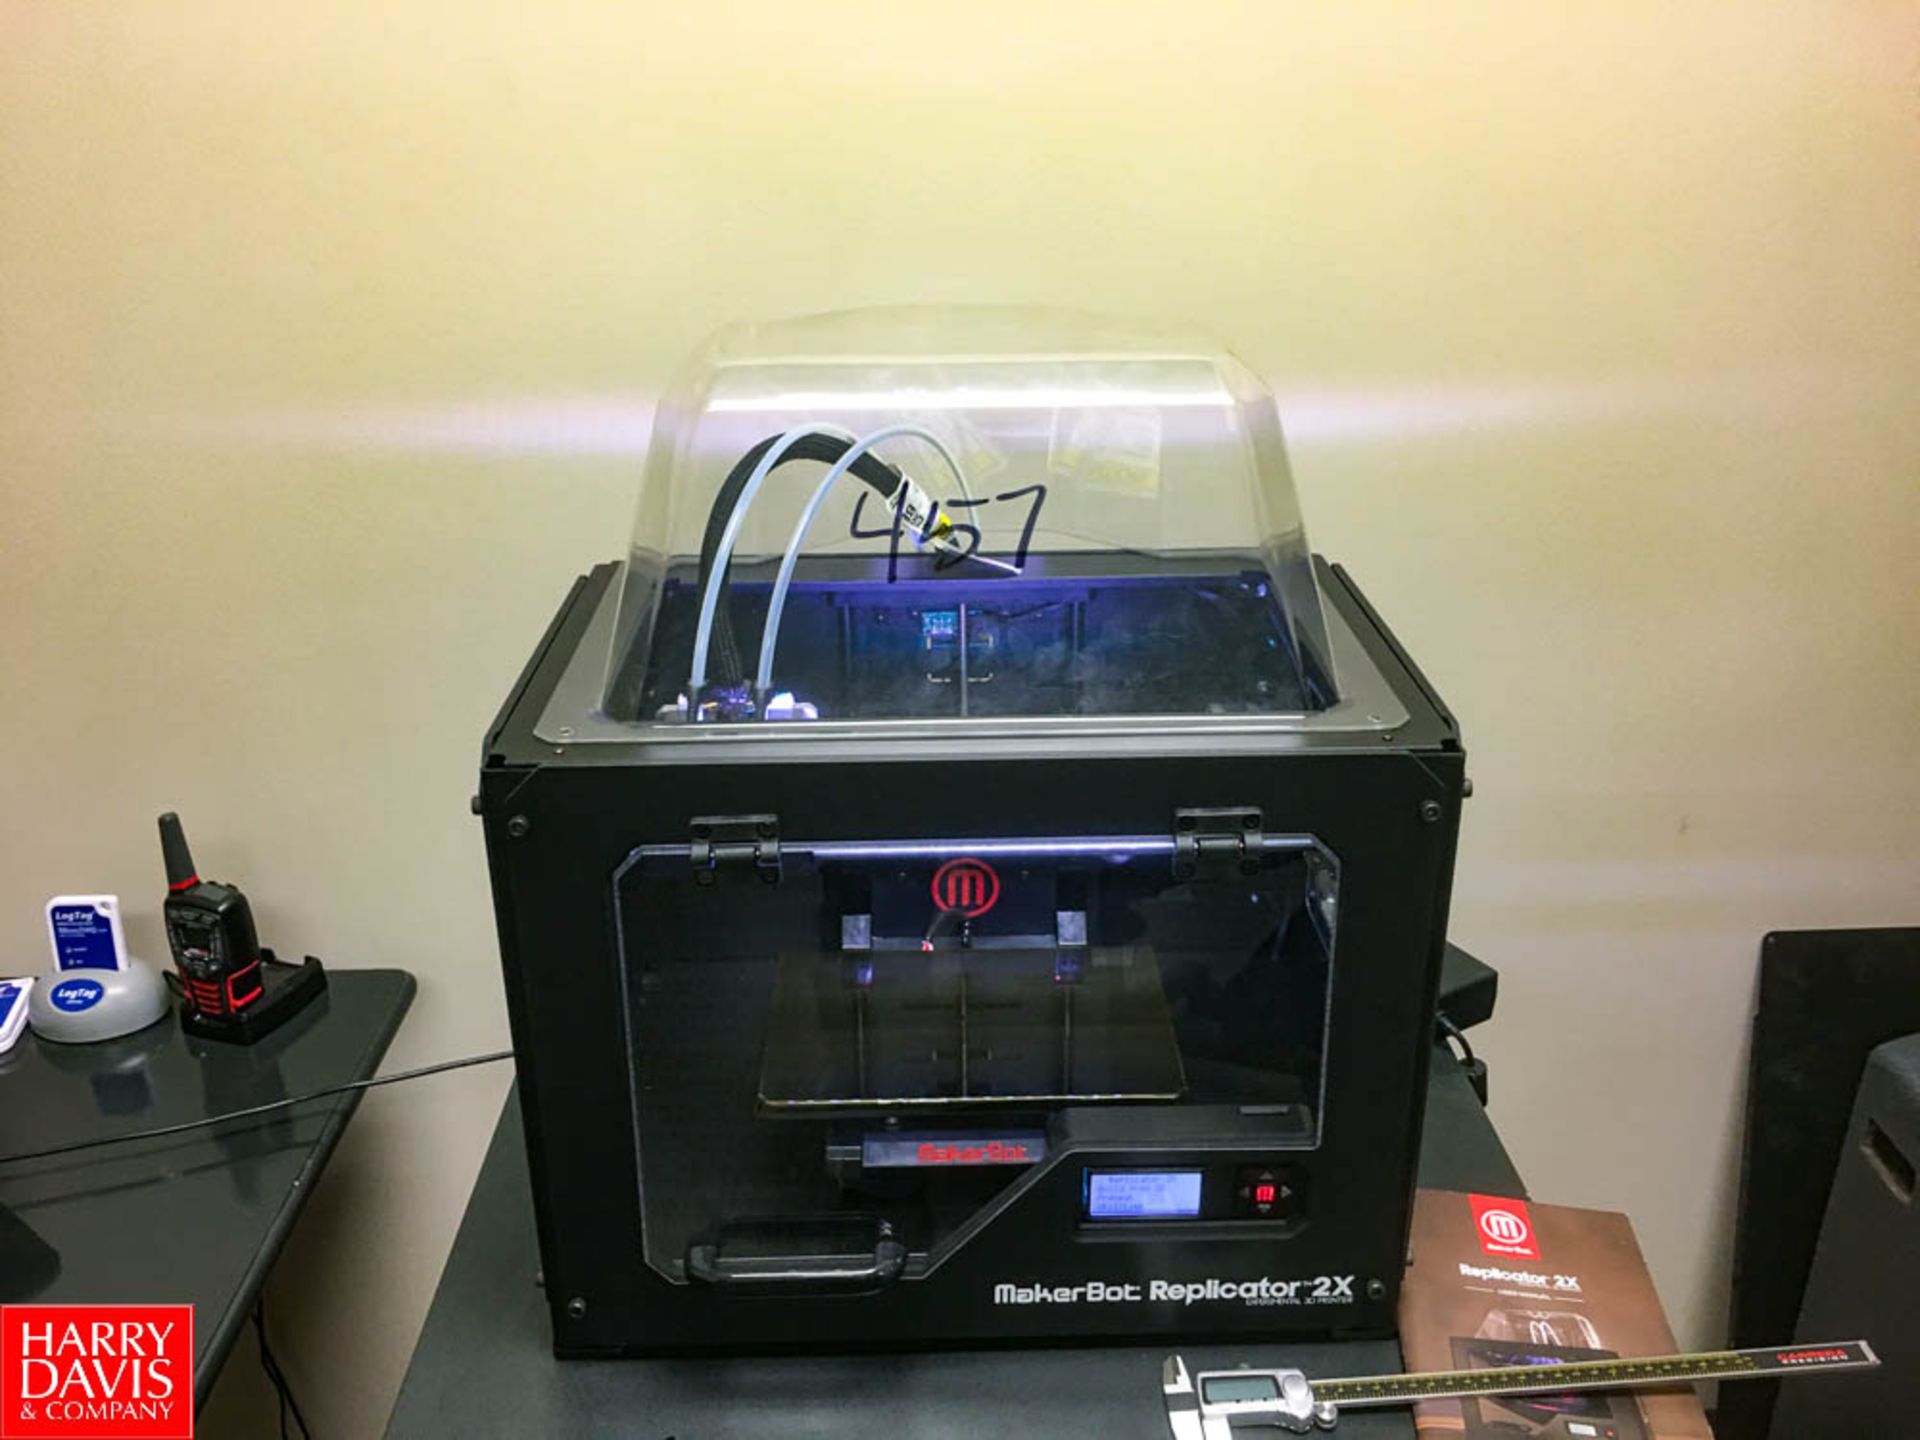 MakerBot Replicator 2X 3D Printer Rigging: $25